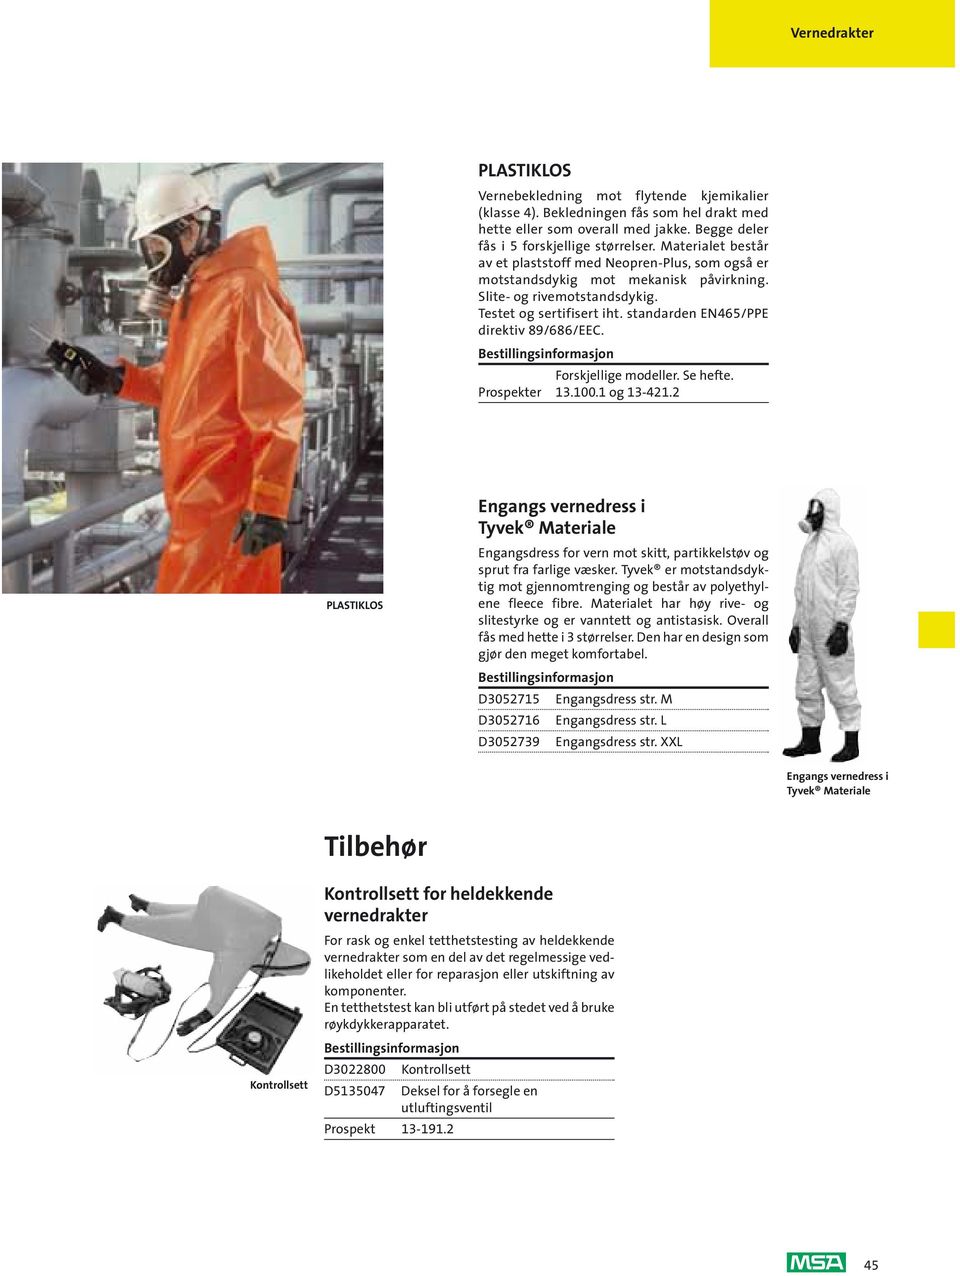 standarden EN465/PPE direktiv 89/686/EEC. Forskjellige modeller. Se hefte. Prospekter 13.100.1 og 13-421.